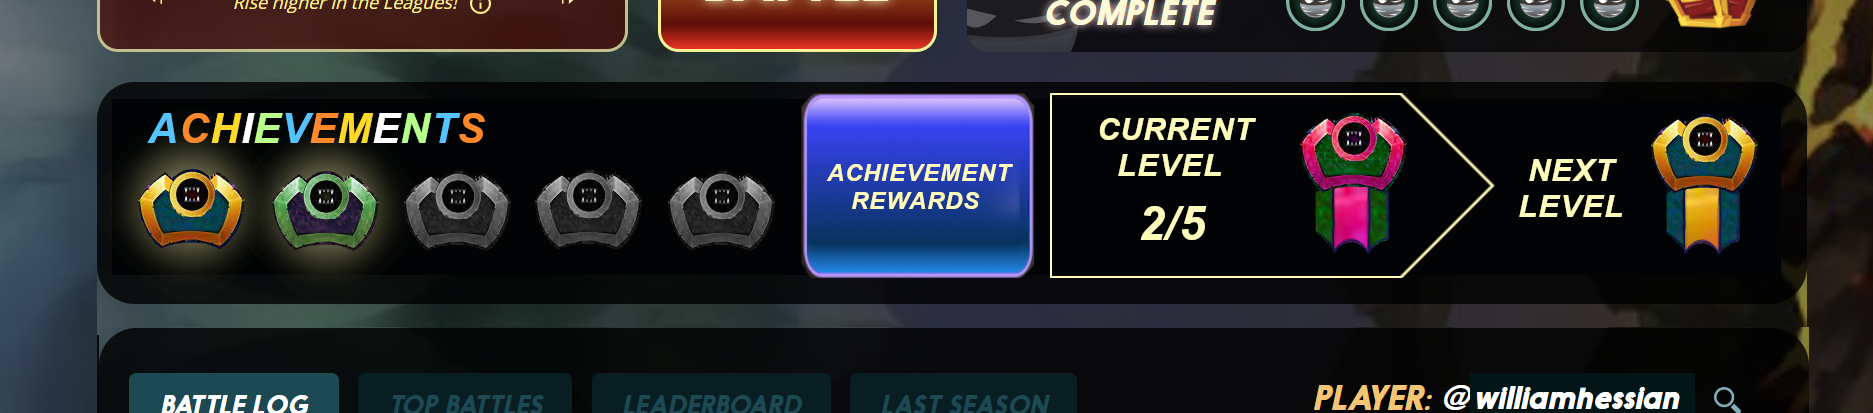 achievementsbanner.jpg